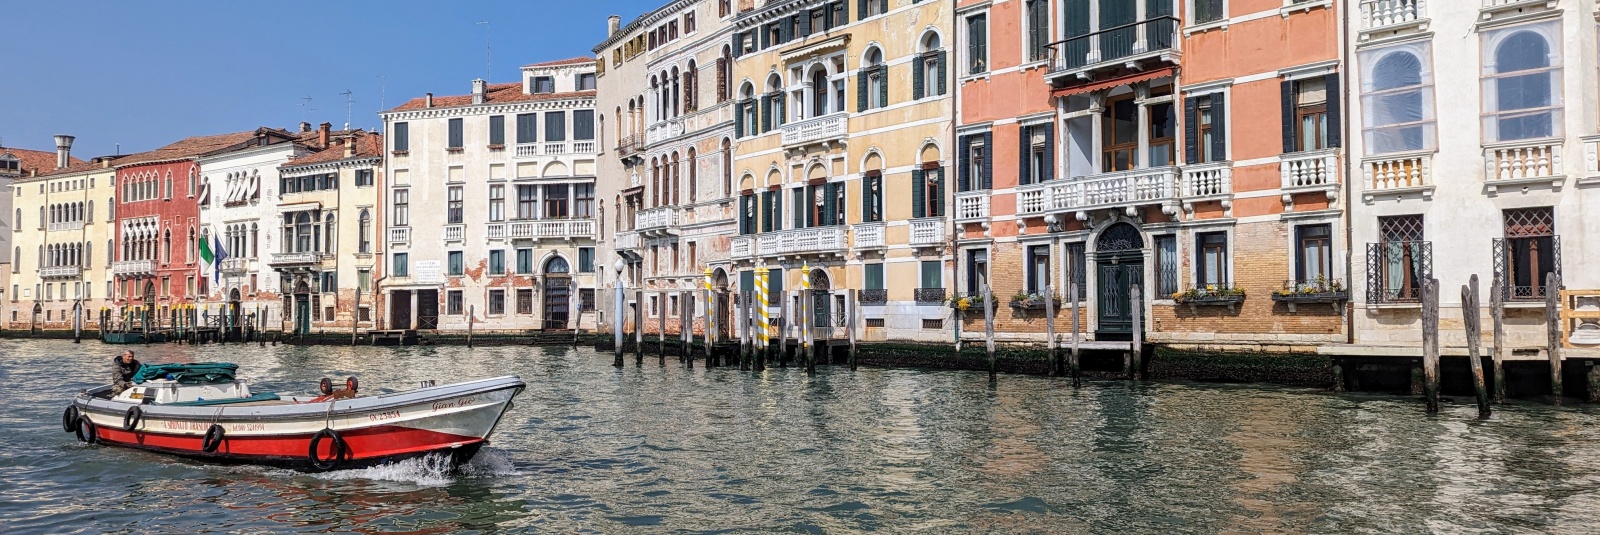 Taxa turistică de intrare în Veneția